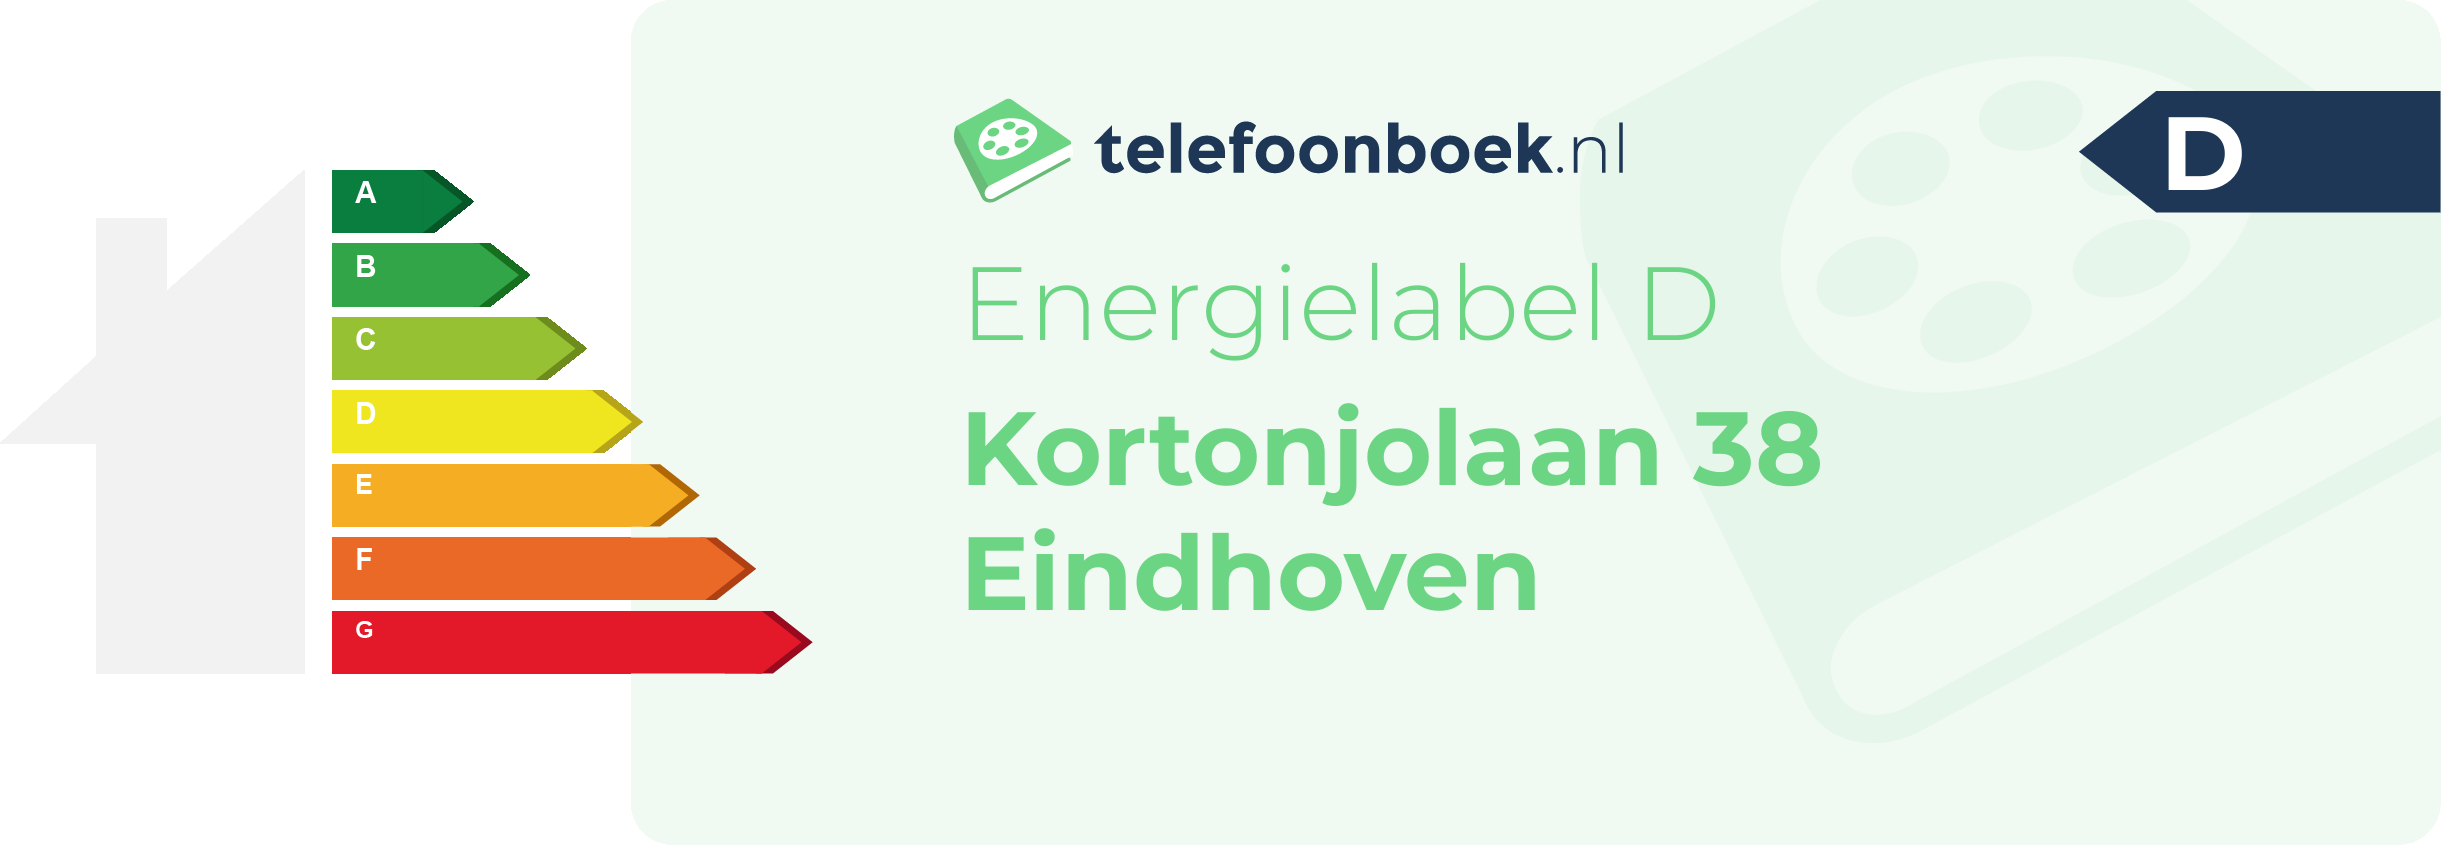 Energielabel Kortonjolaan 38 Eindhoven